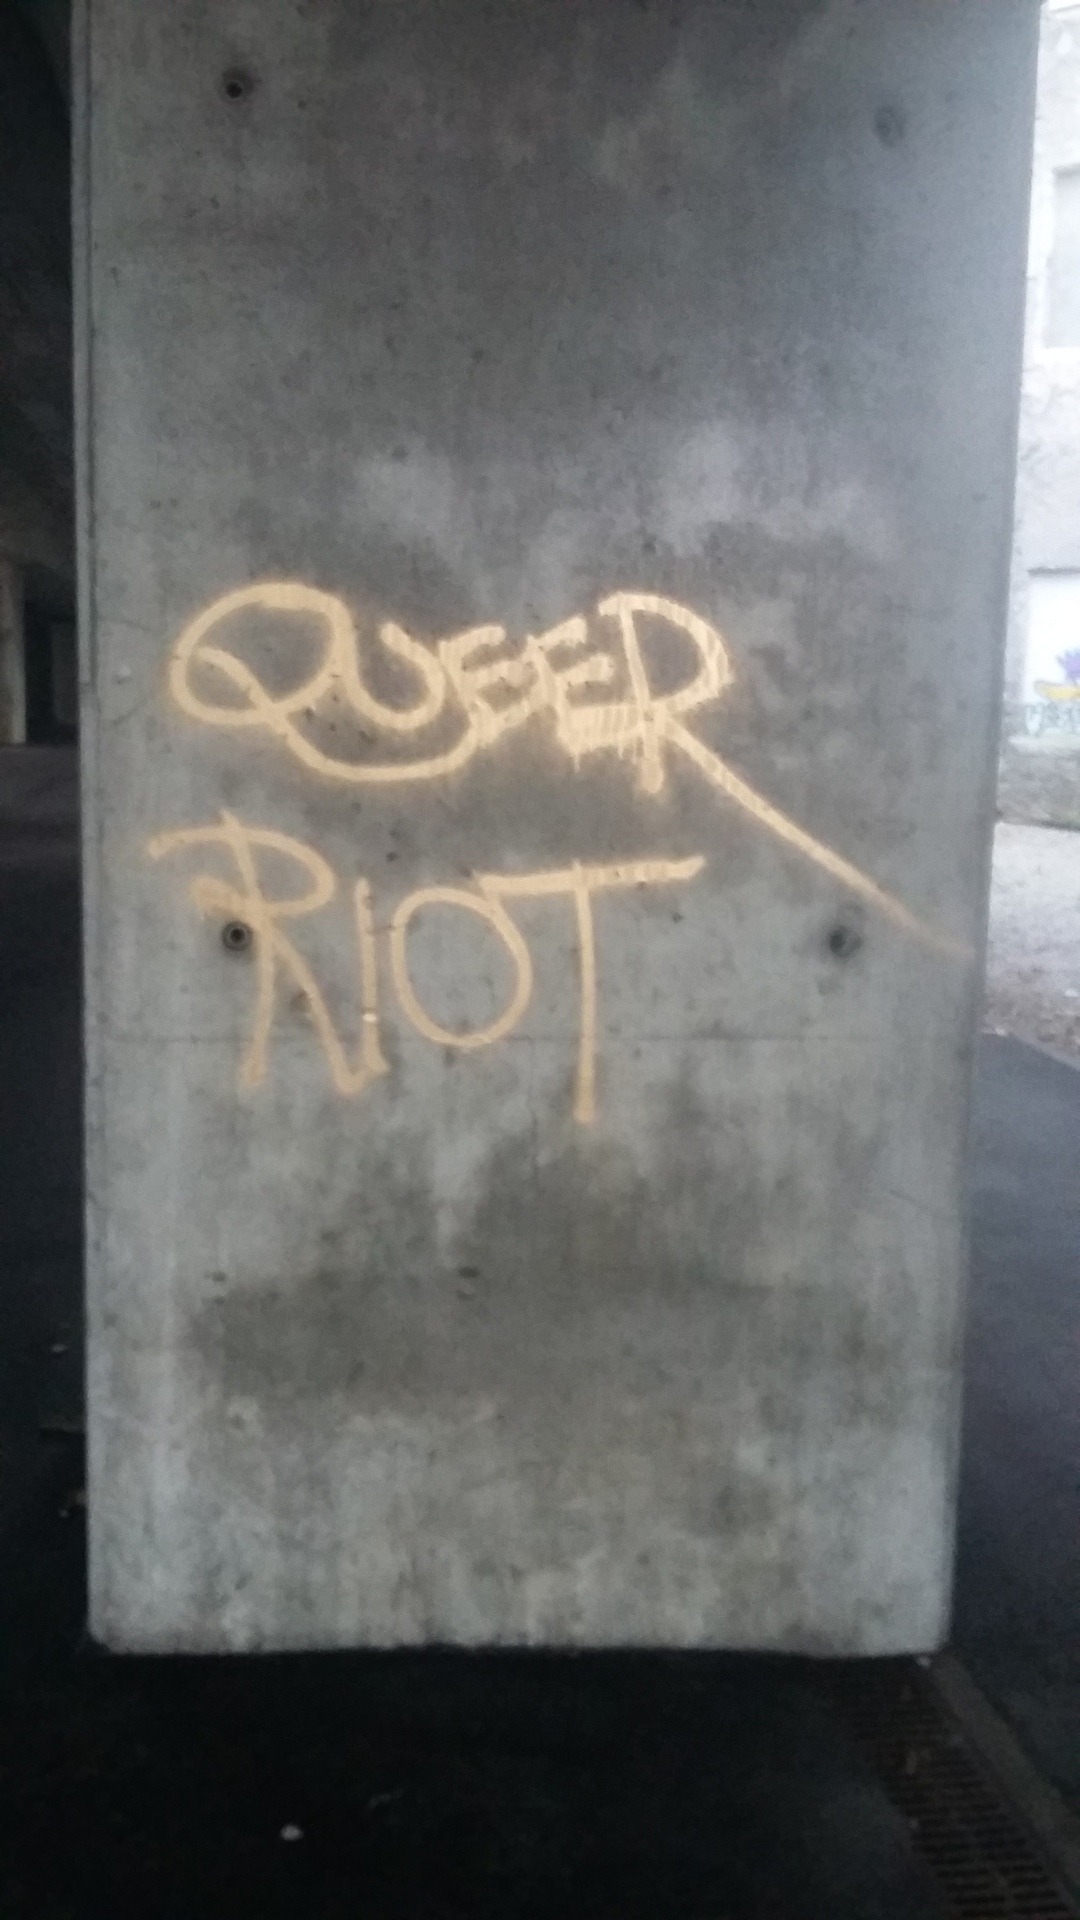 queergraffiti:  “these queers kill Nazis” “queer riot” found under a bridge